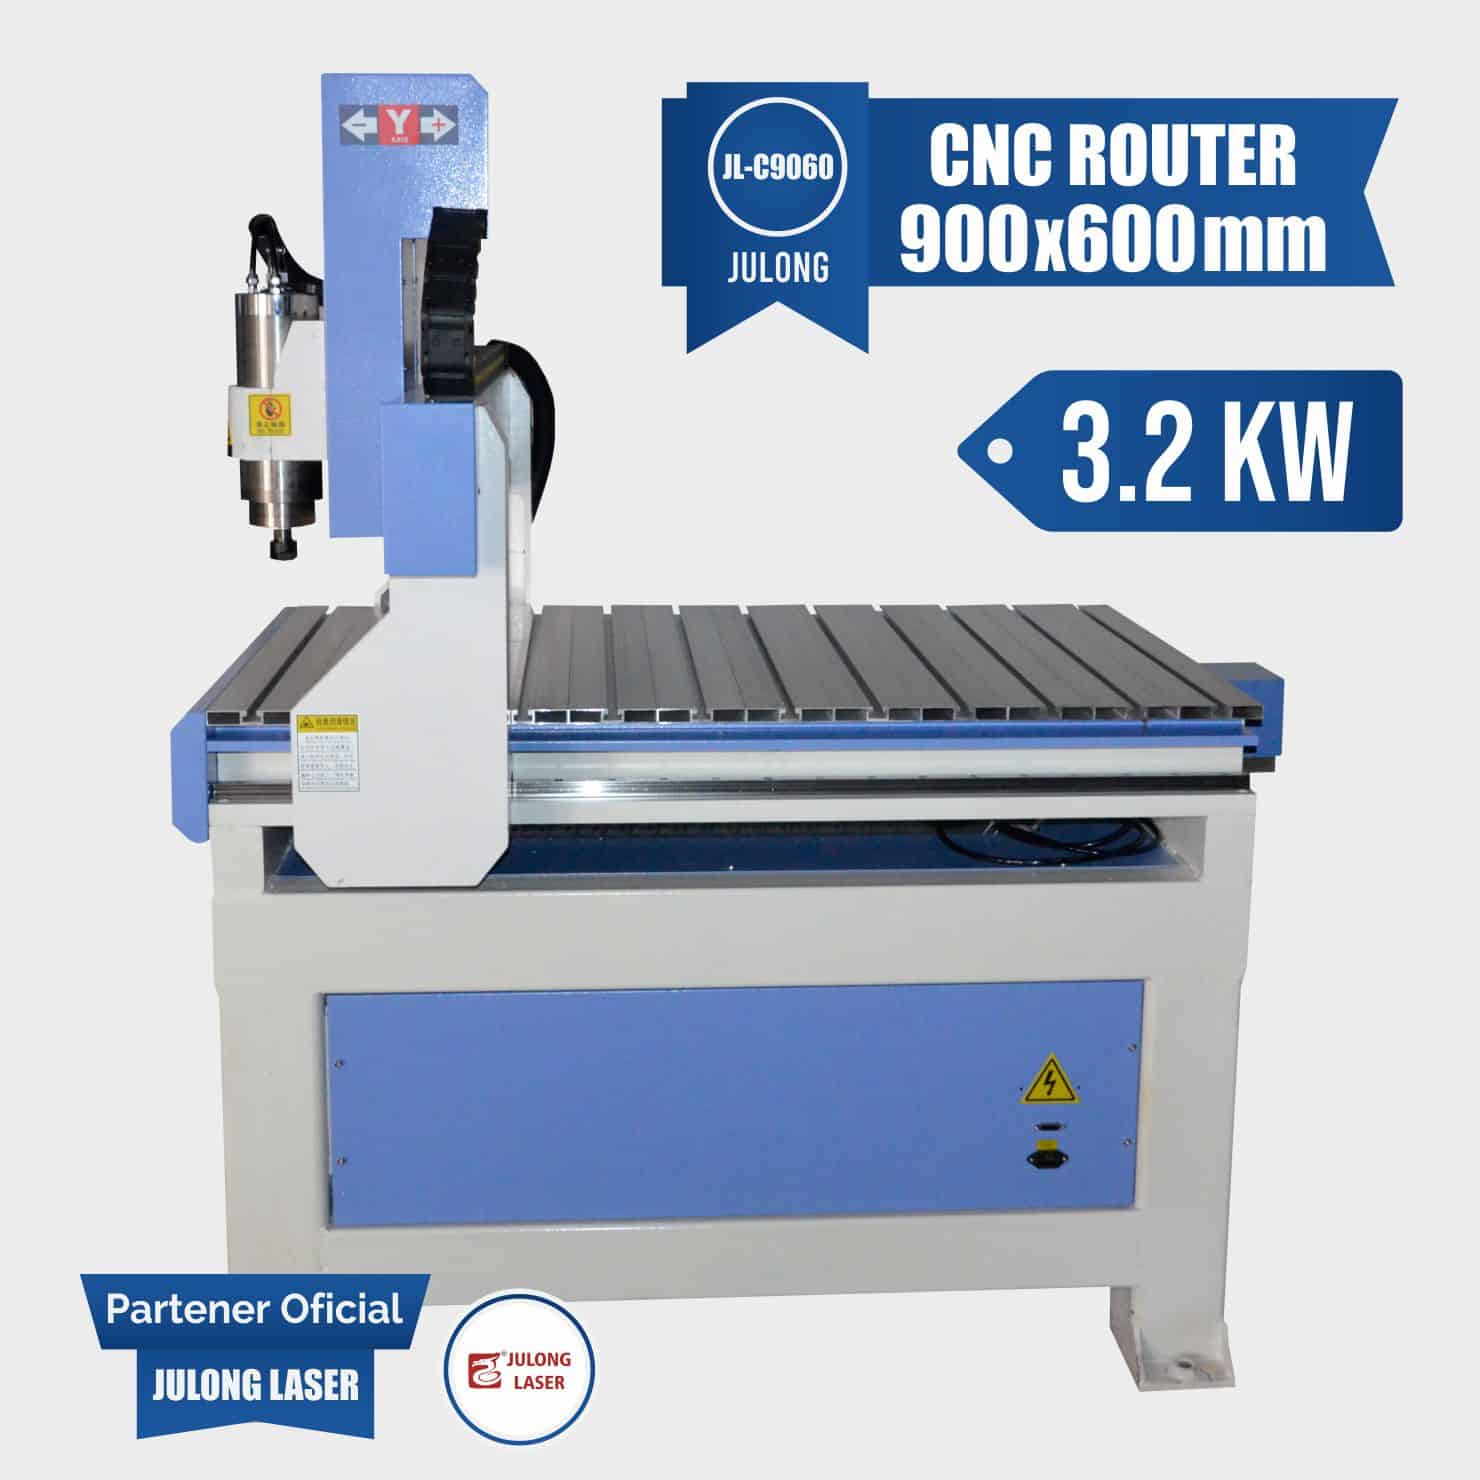 CNC Router 900x600 mm 3.2KW